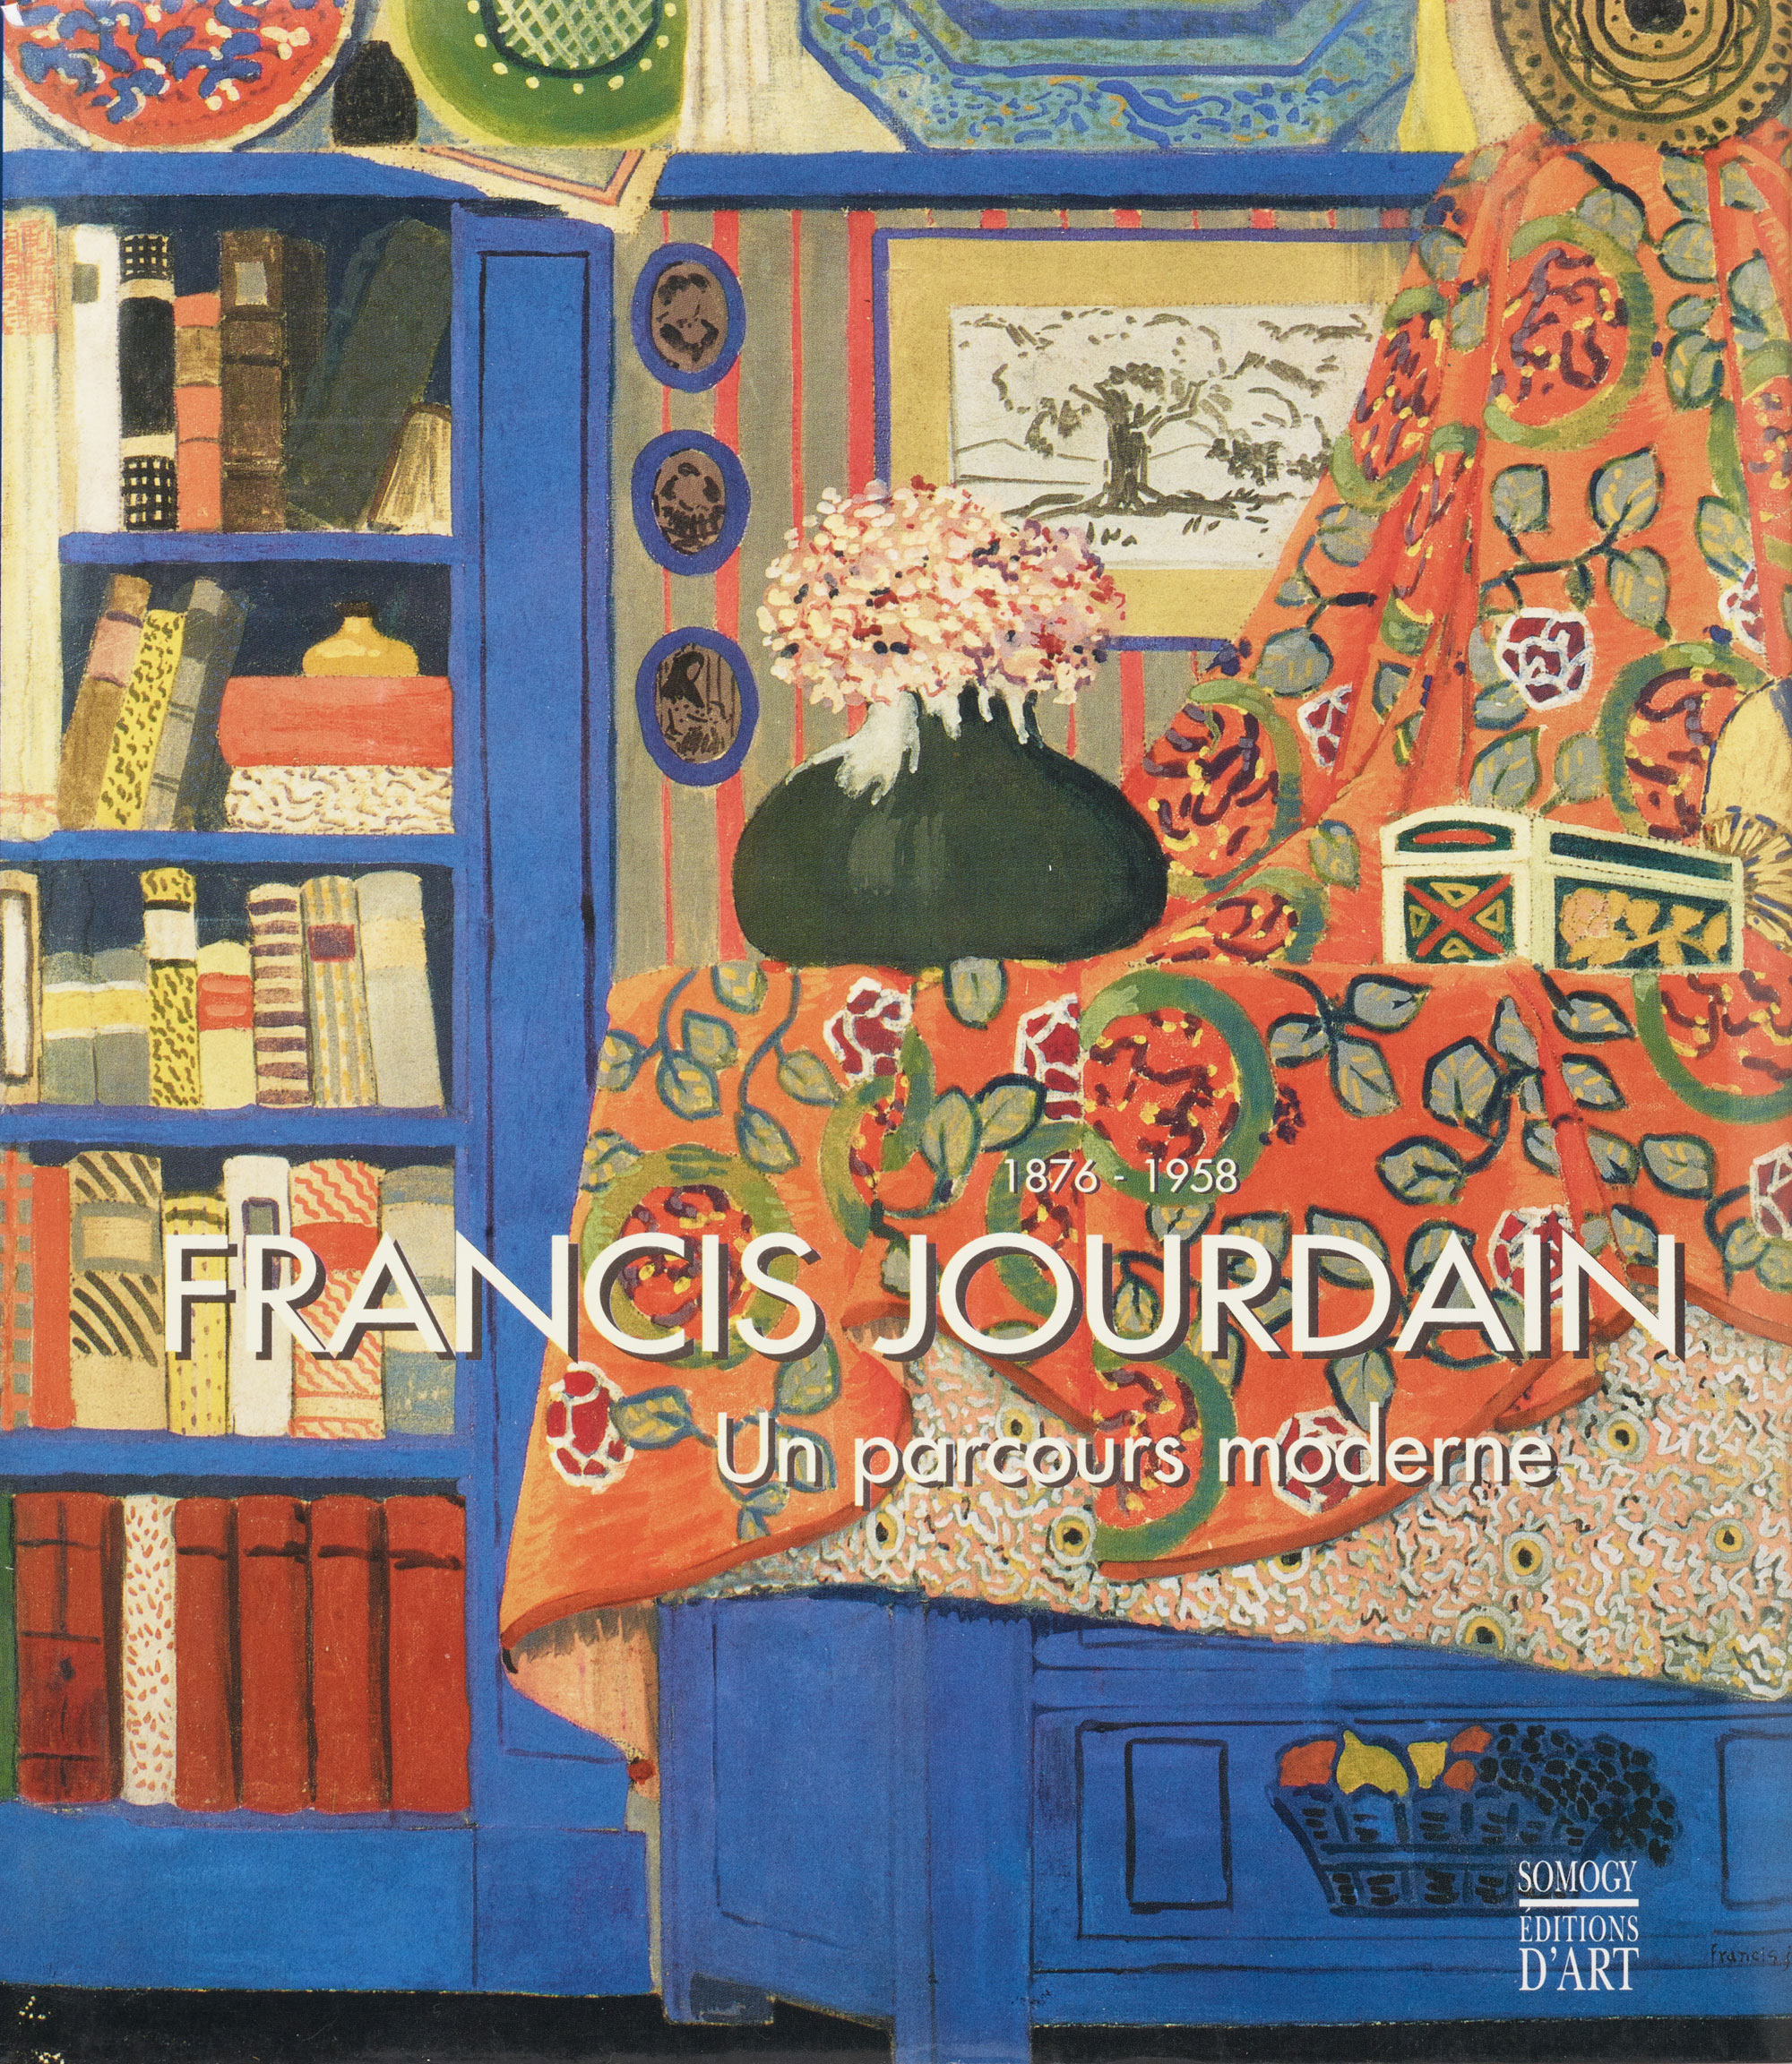 Francis Jourdain - Un parcours moderne